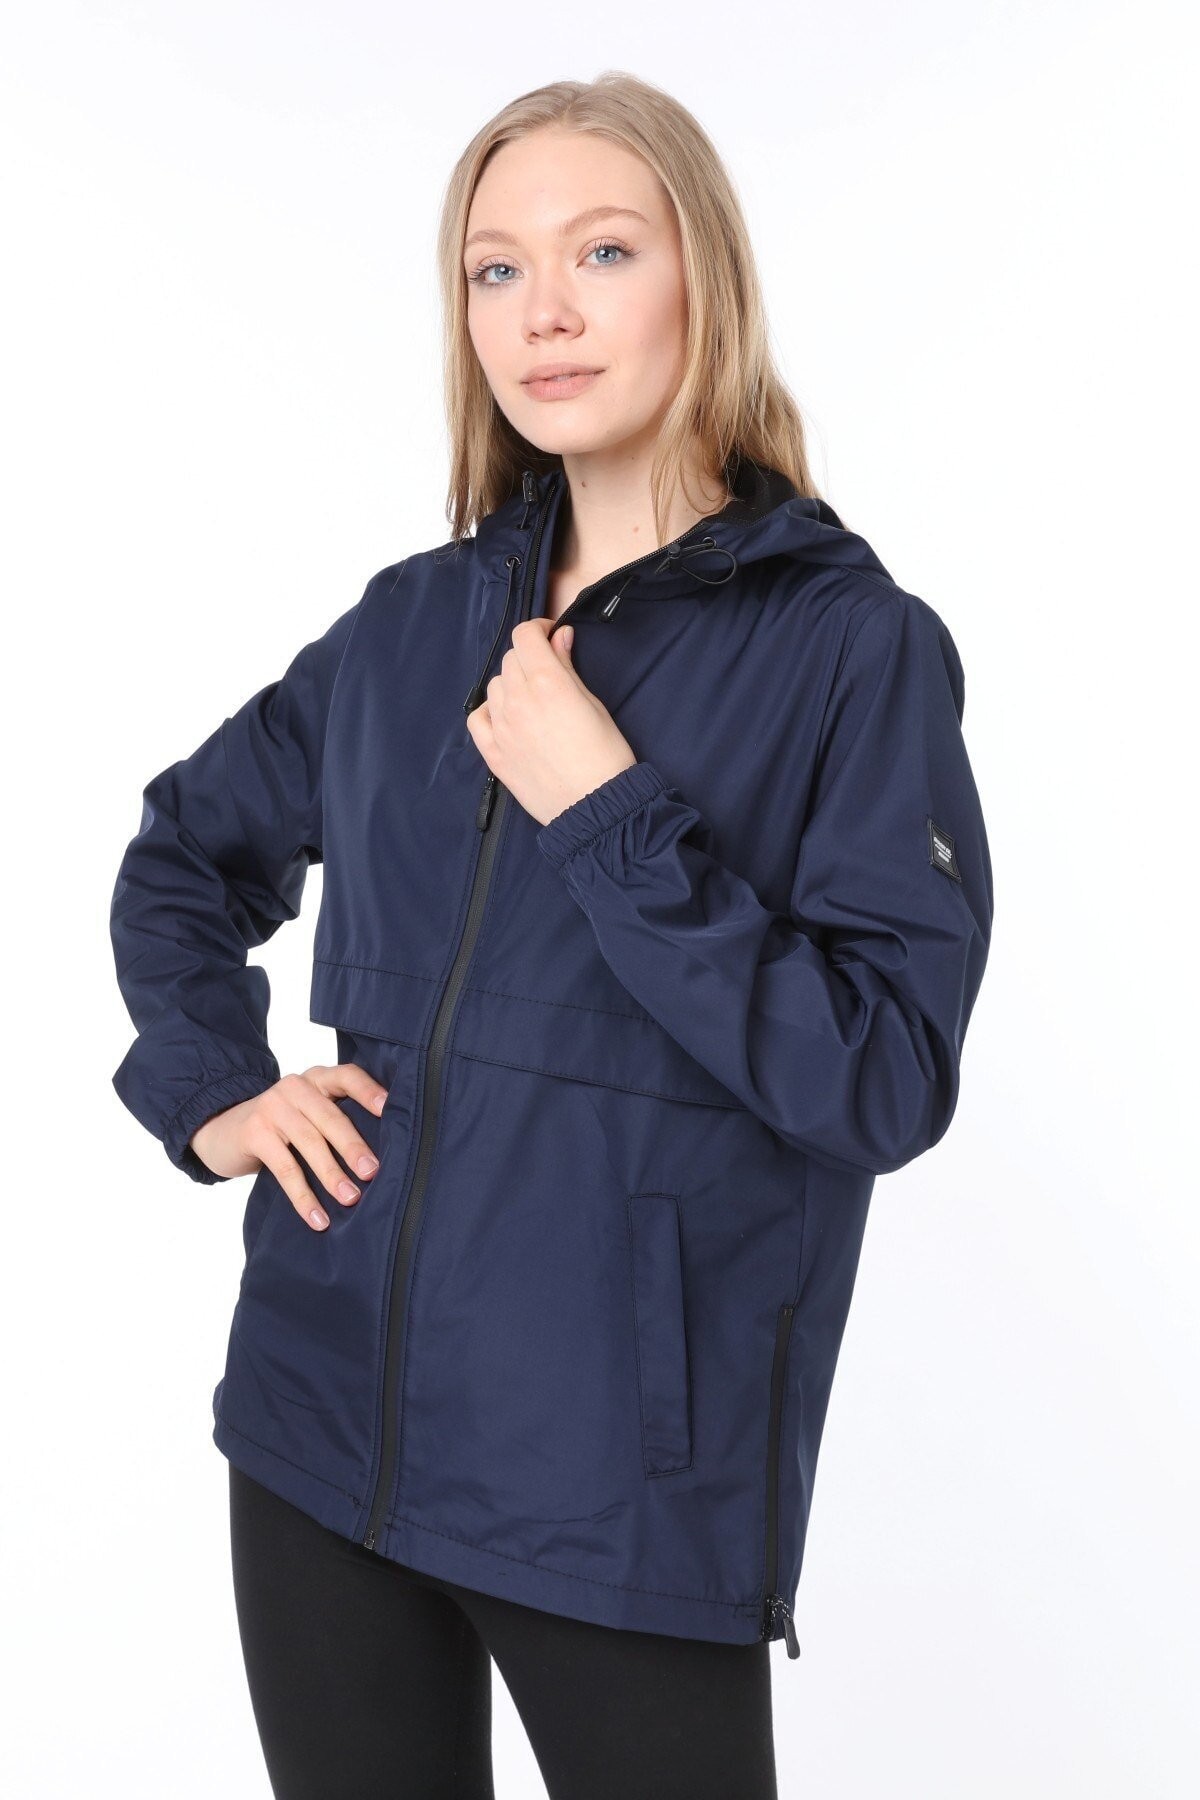 Ghassy Co.Kadın  Rüzgarlık/Yağmurluk Yırtmaç Detaylı Mevsimlik Siyah Spor Ceket - LACİVERT